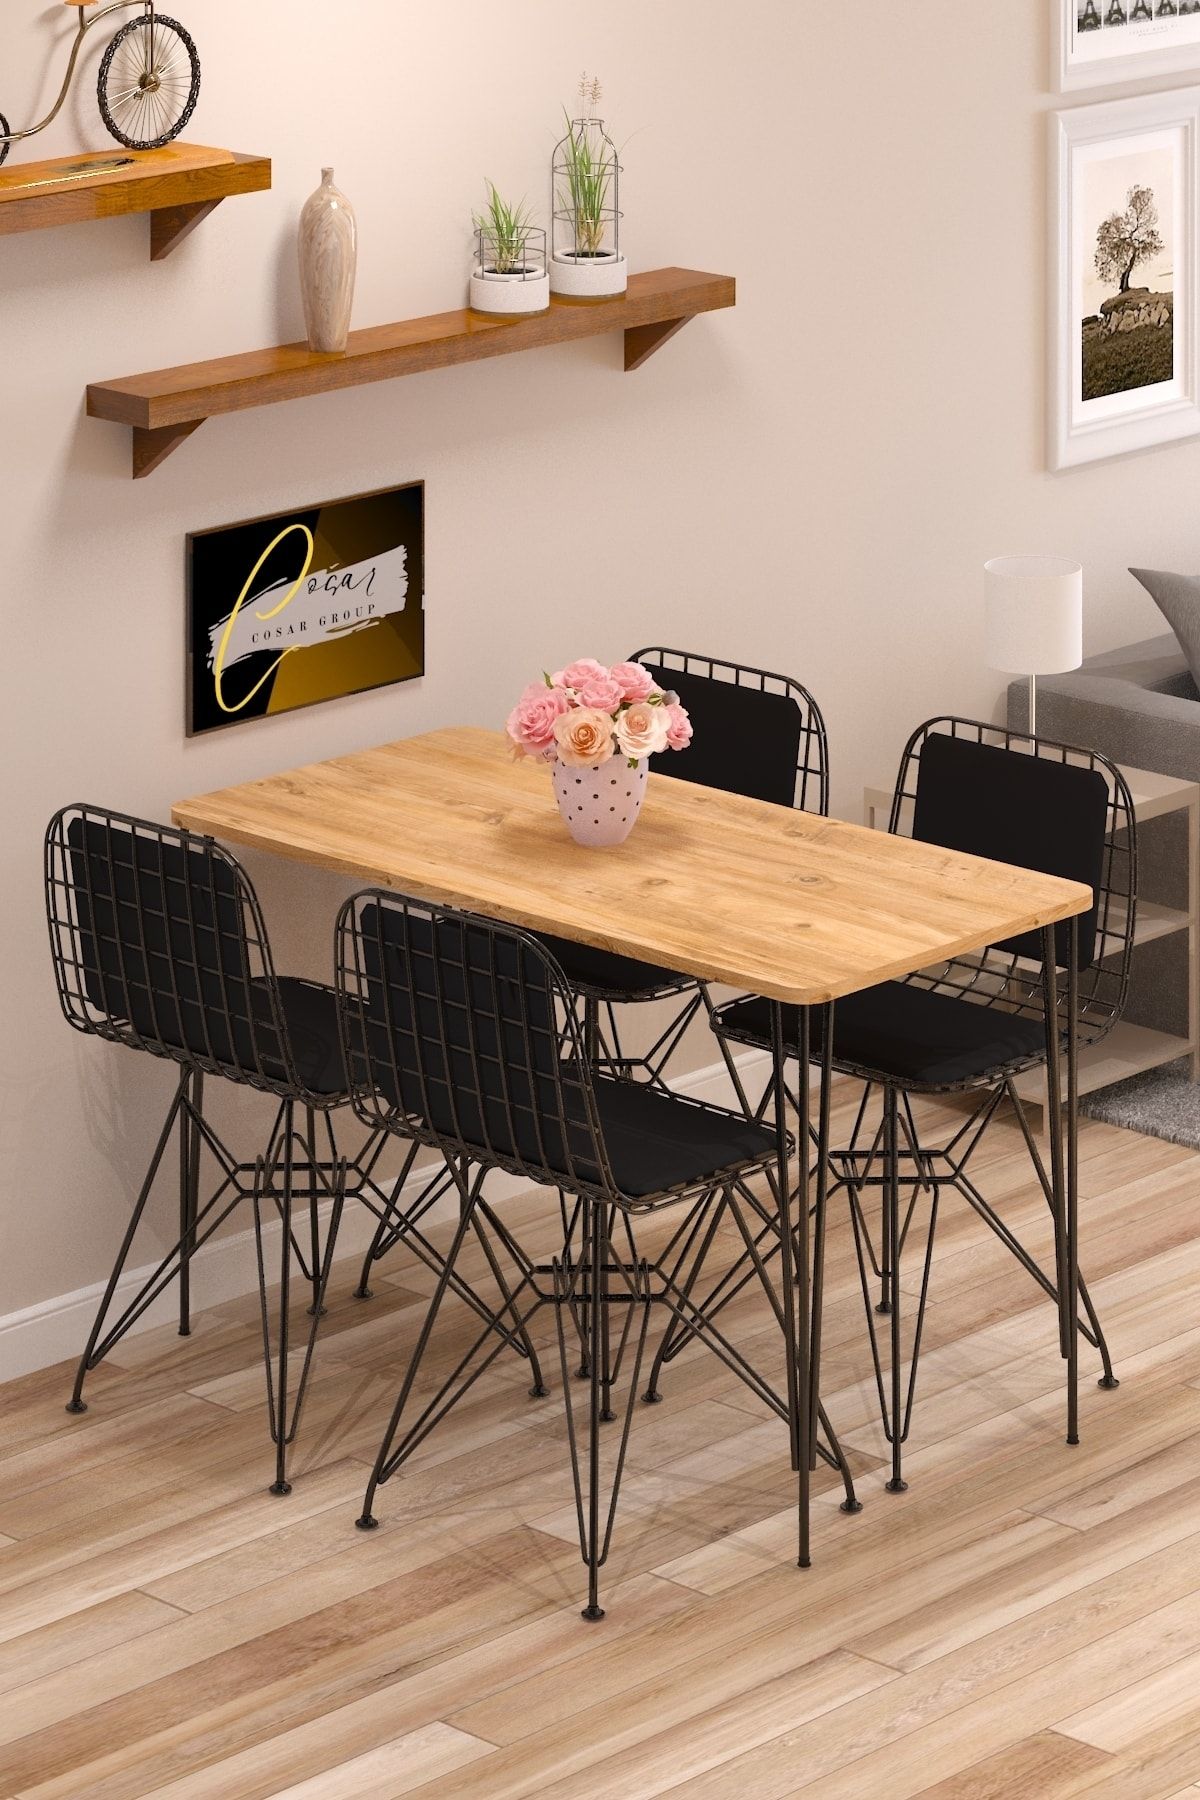 Cosargroup Yemek Masa Takımı Mutfak Masası Sırt Minderli 4 Adet Tel Sandalye 1 Adet Masa 60x120 Çam